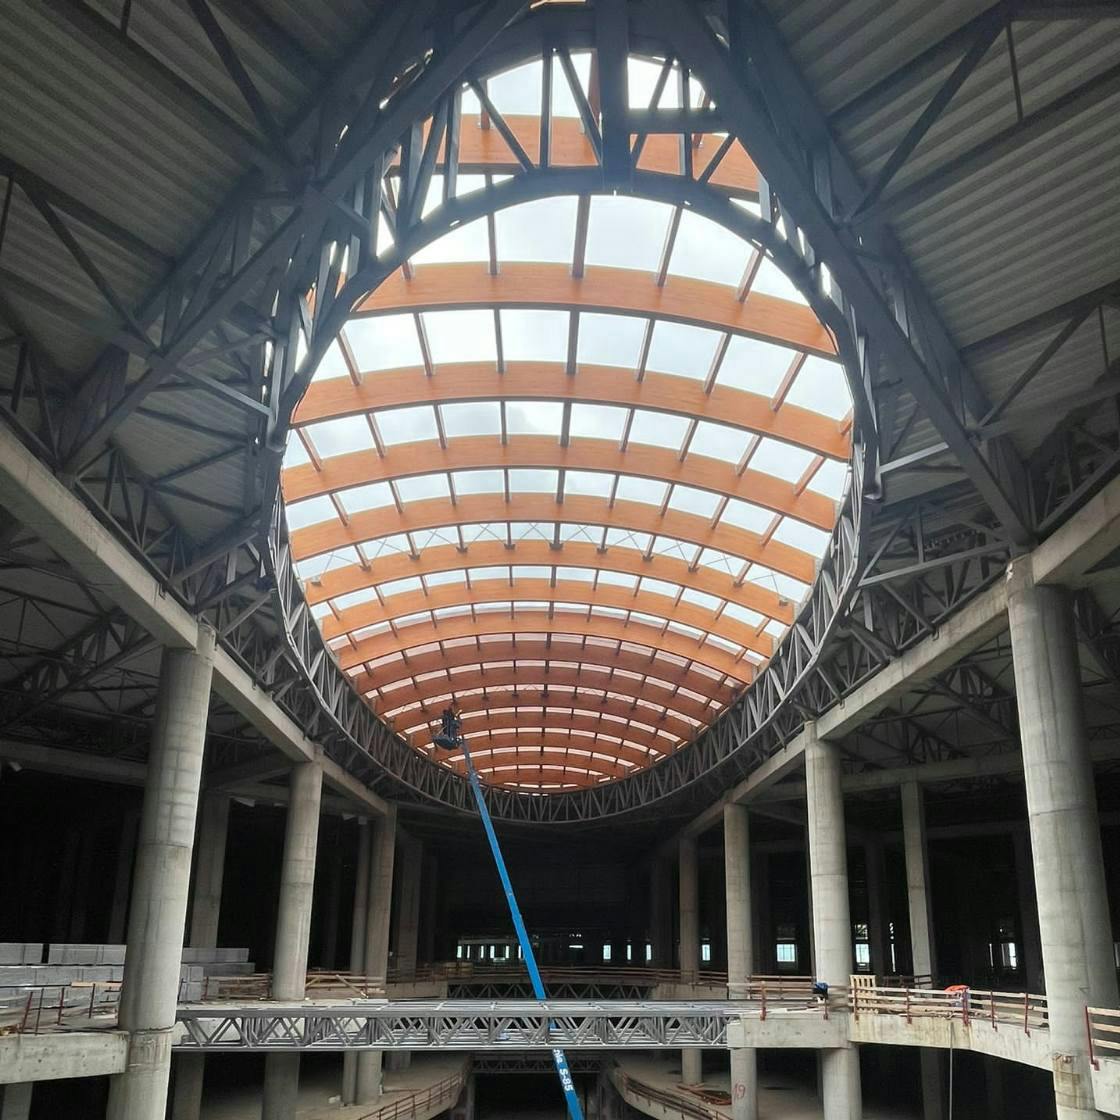 Prishtina Mall interior structure